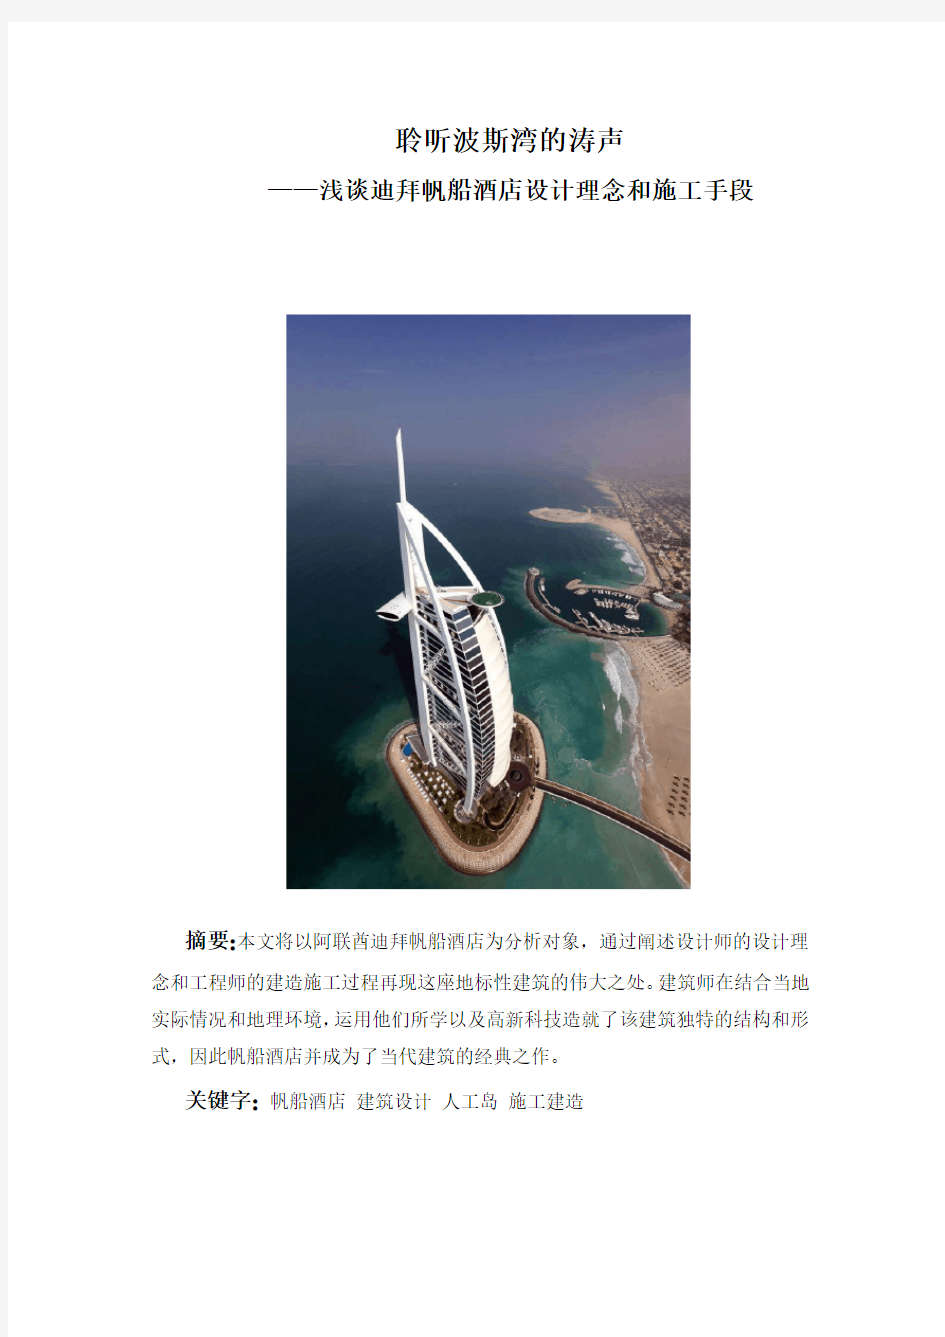 建筑概论大作业_迪拜帆船酒店设计理念和施工手段